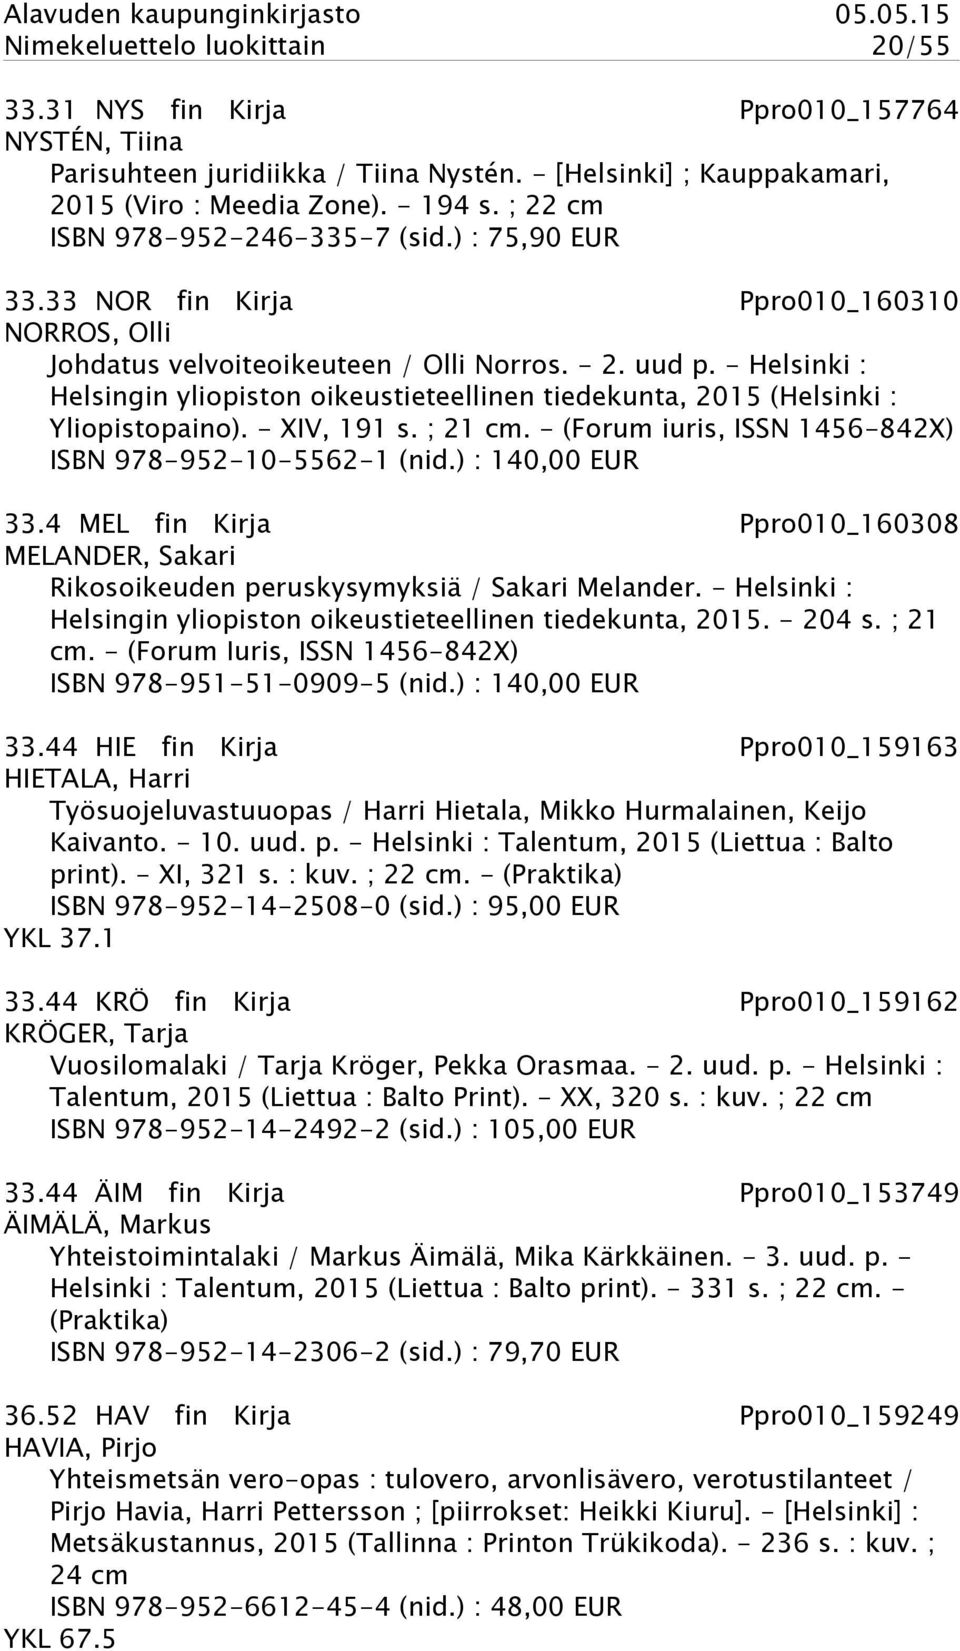 - Helsinki : Helsingin yliopiston oikeustieteellinen tiedekunta, 2015 (Helsinki : Yliopistopaino). - XIV, 191 s. ; 21 cm. - (Forum iuris, ISSN 1456-842X) ISBN 978-952-10-5562-1 (nid.) : 140,00 EUR 33.